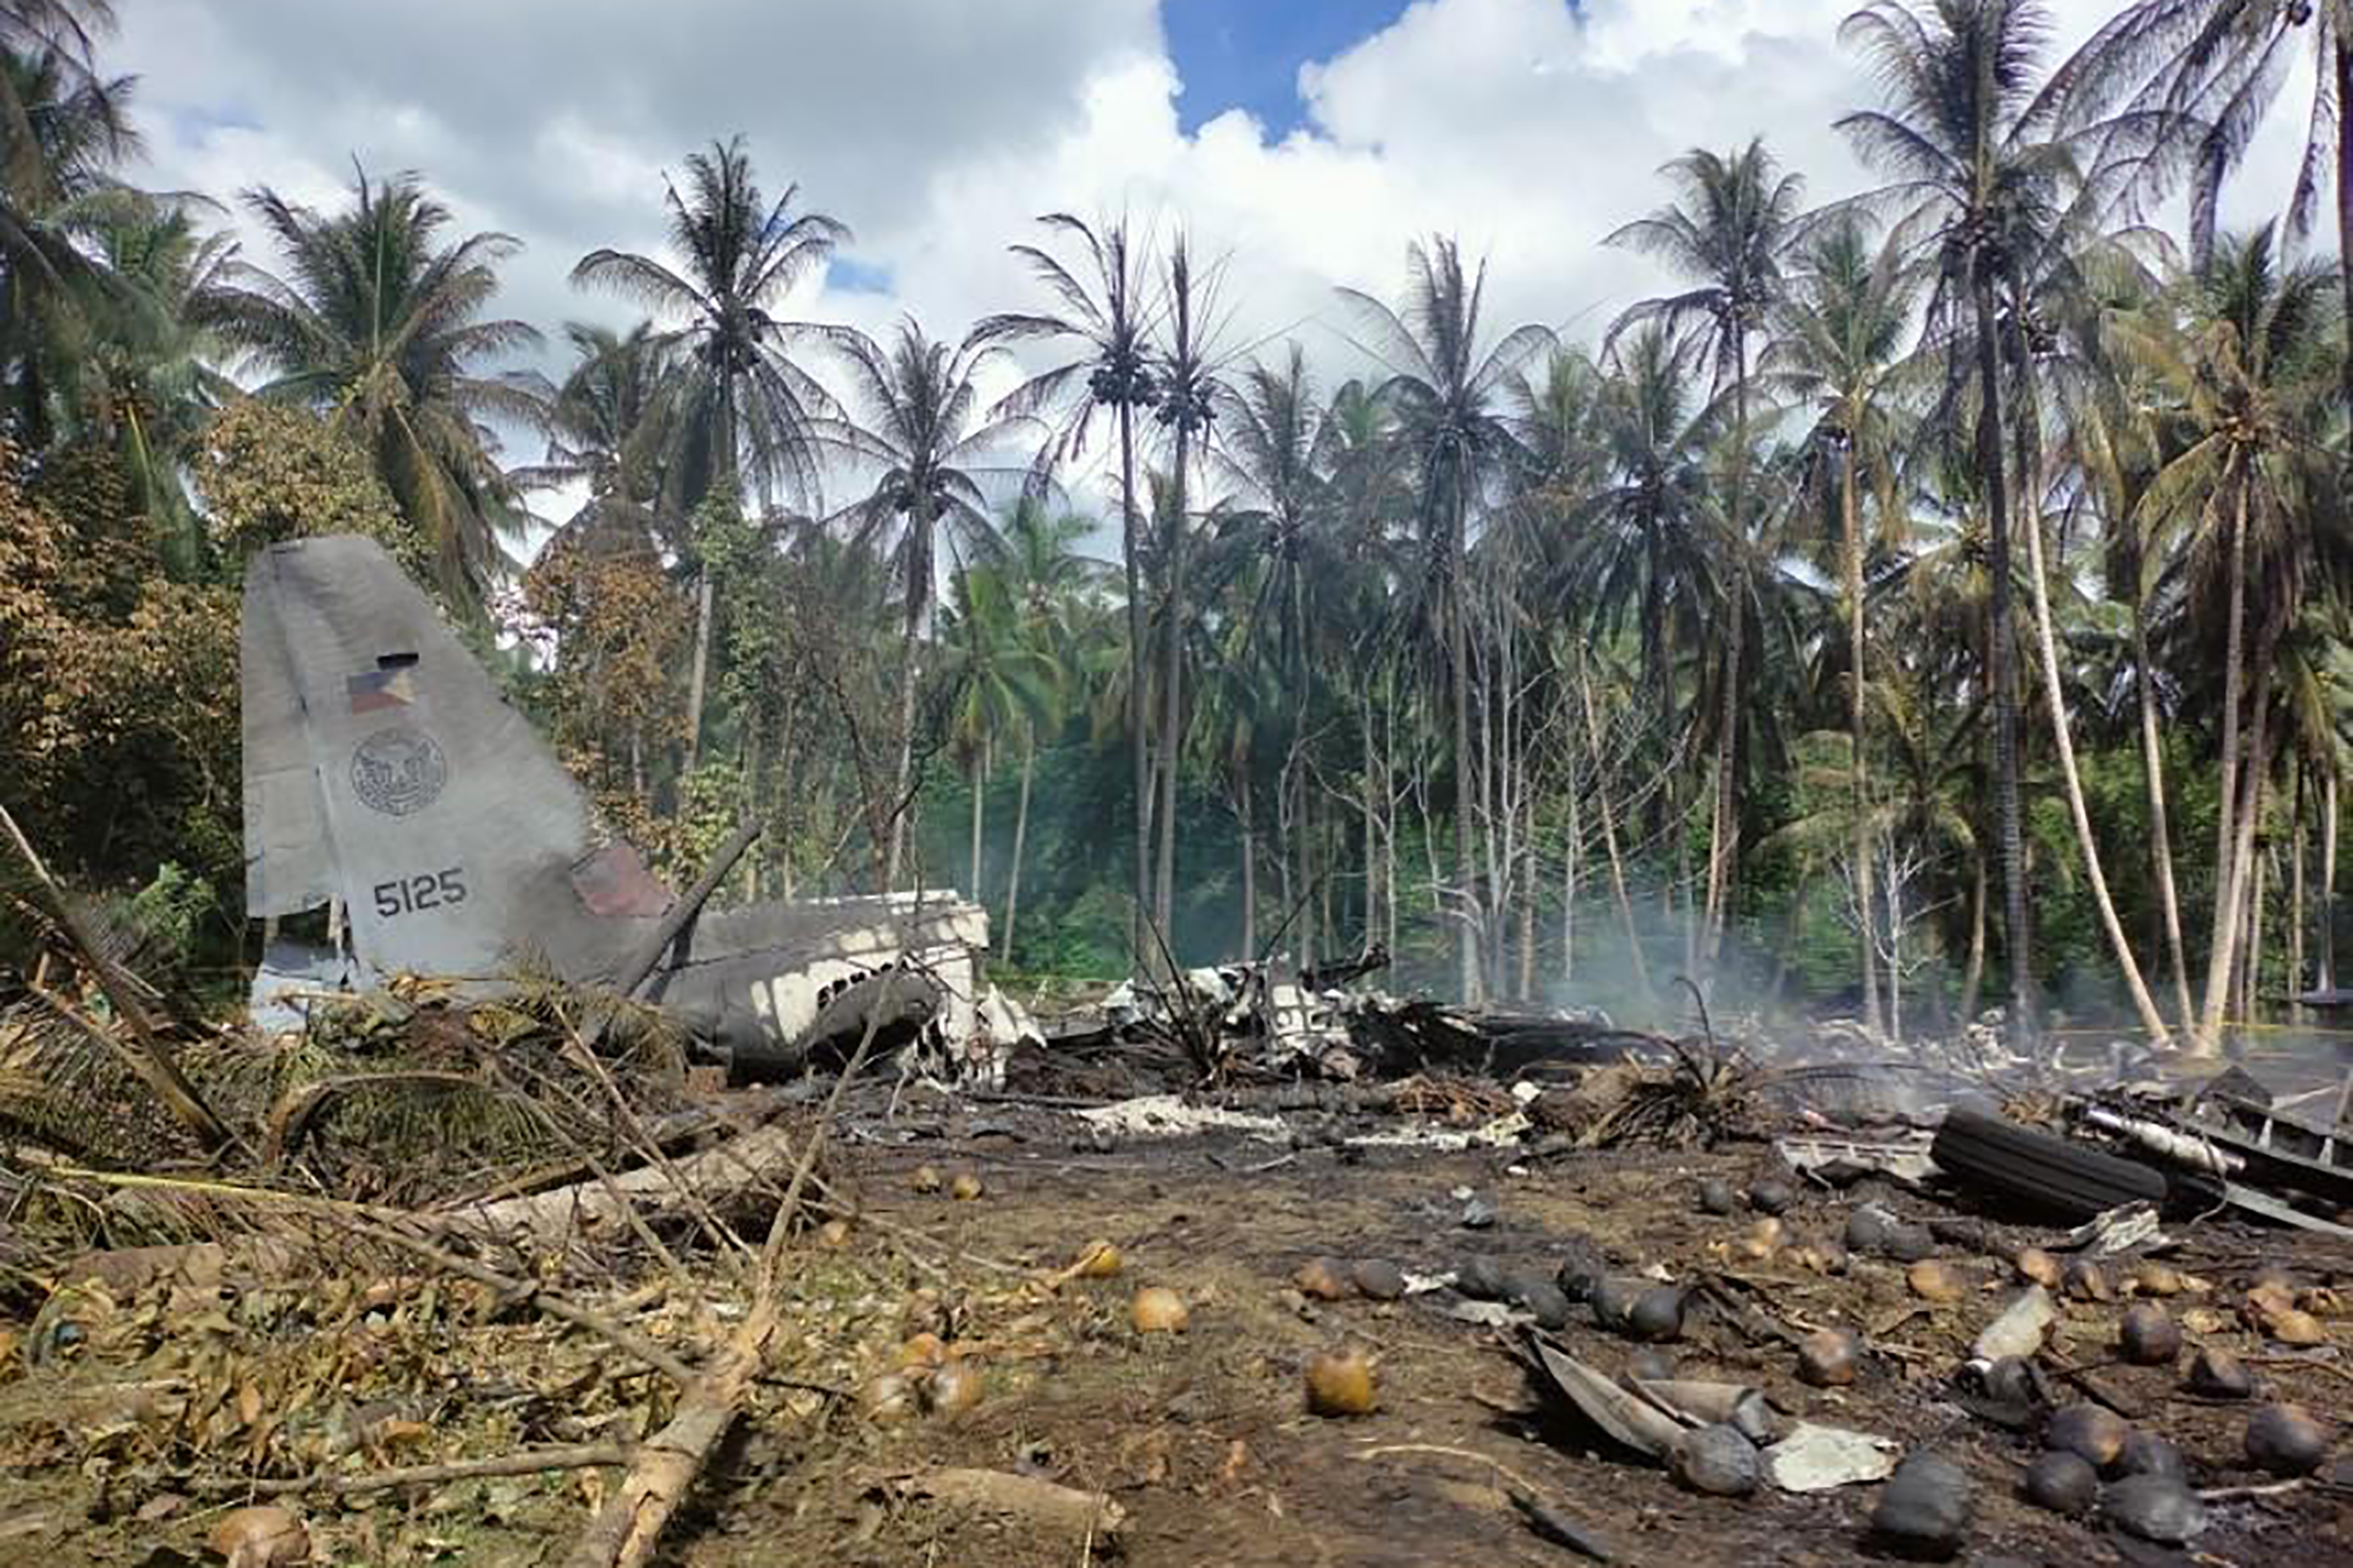 Авиакатастрофа 4. Катастрофа c-130 филиппинских ВВС. Самолет 130 25 погибших. Авиакатастрофа на Филиппинах 5 июля 2021 года. Катастрофа 1987 Филиппины.